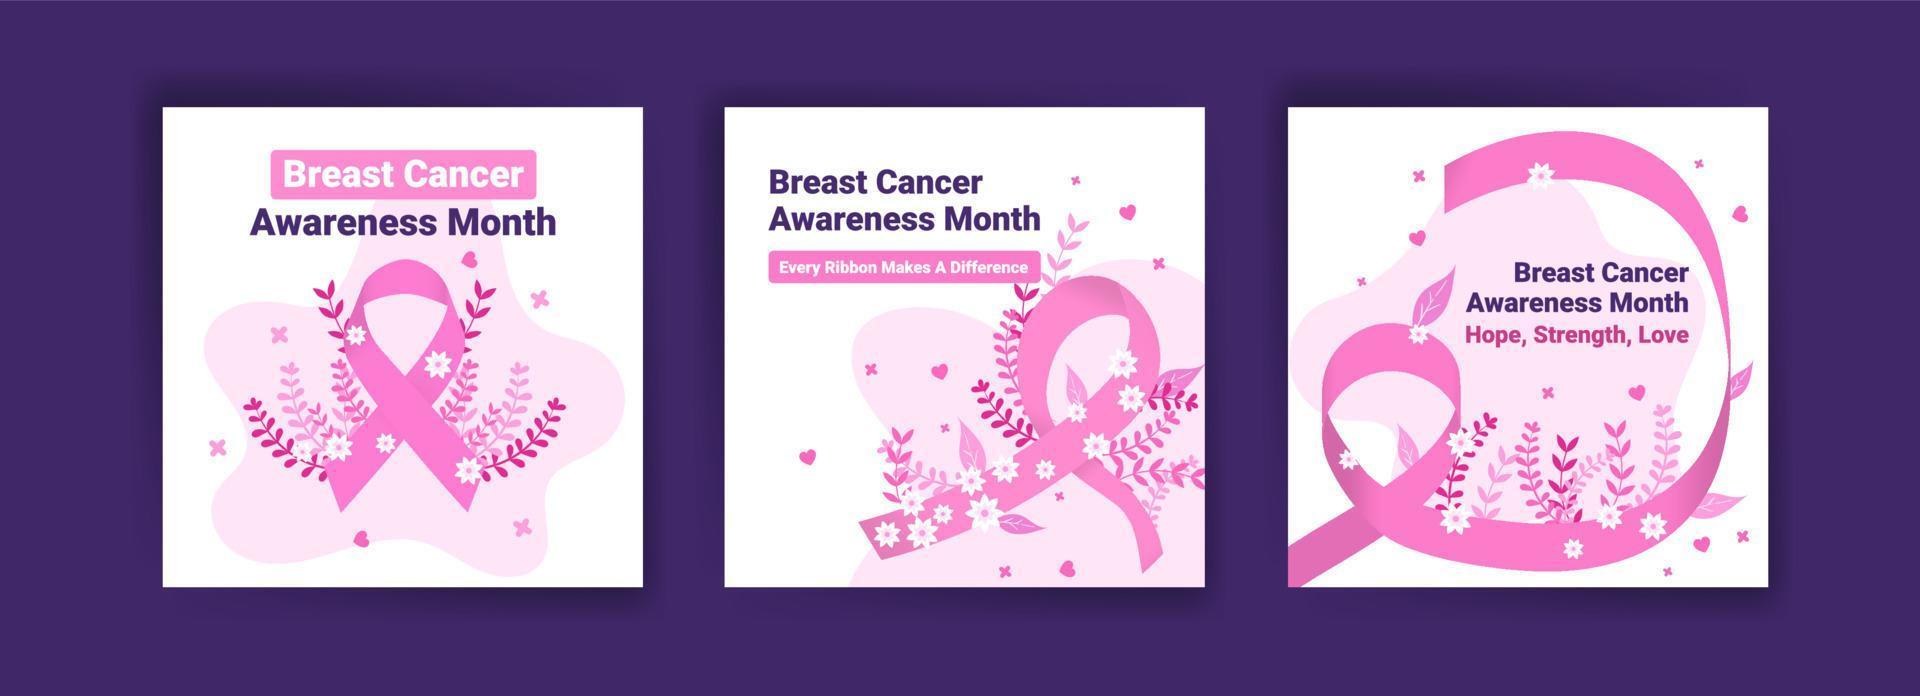 modelo de postagem de mídia social para conscientização do câncer de mama. saúde da mulher. comemorar anual. conceito médico. vetor